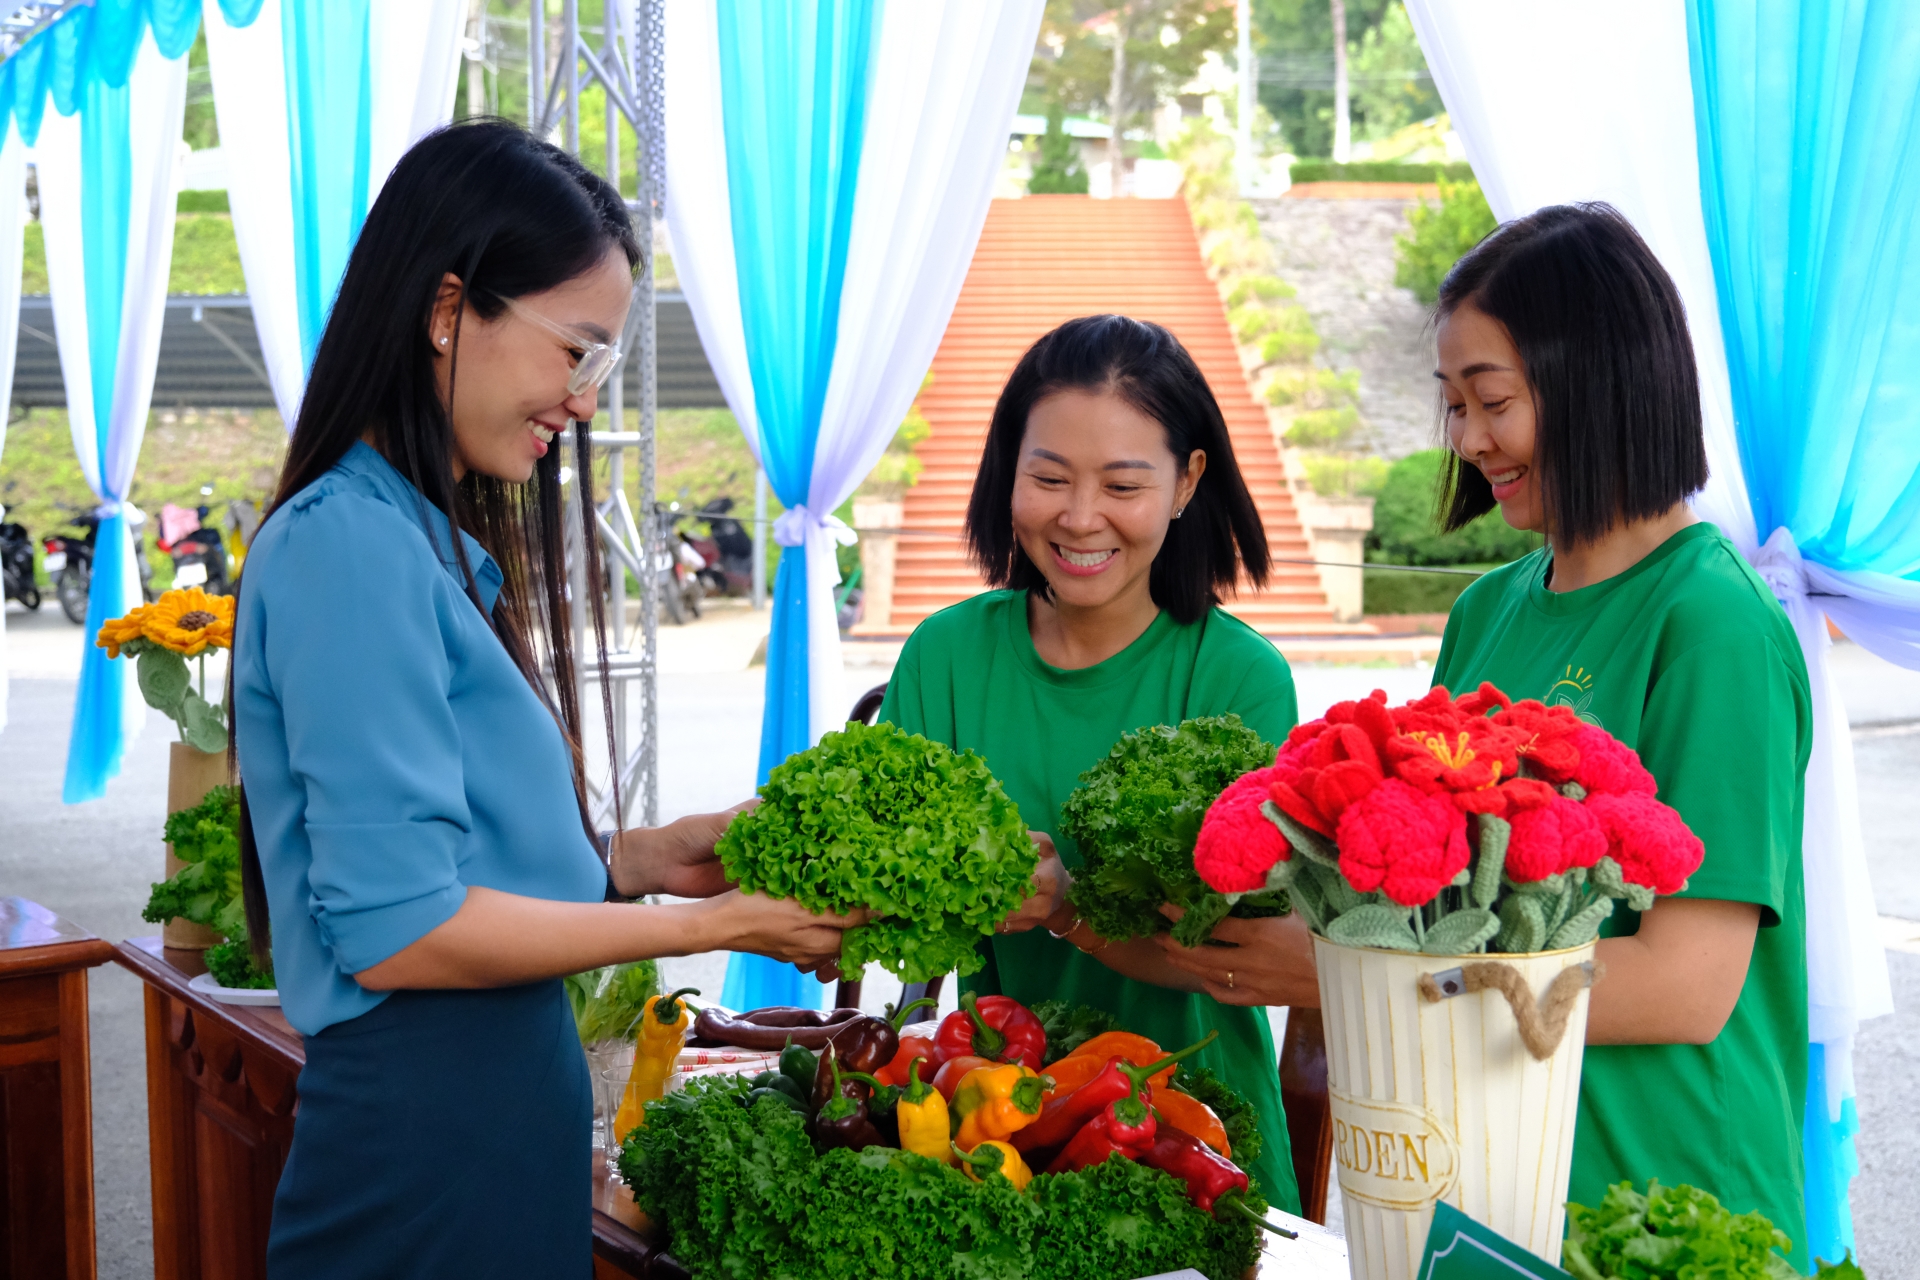 Meli Green Farm nỗ lực phát triển thành đơn vị cung cấp các sản phẩm chất lượng cho khách hàng tại thị trường Việt Nam cũng như chinh phục thị trường xuất khẩu